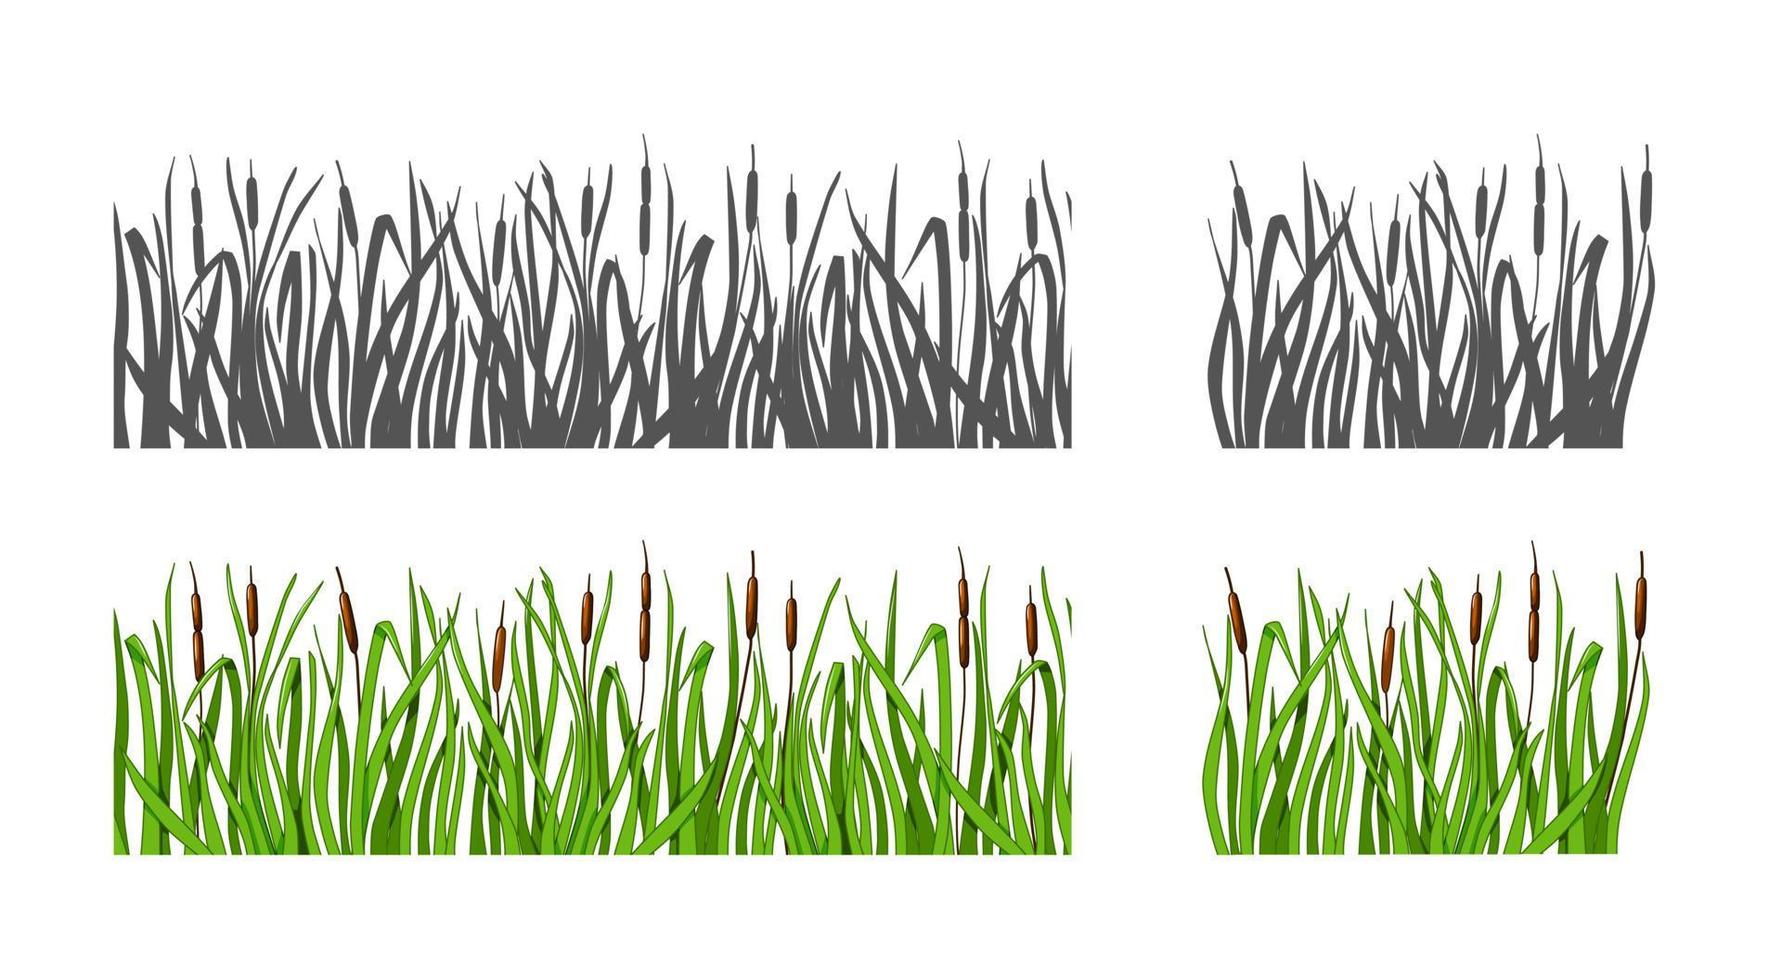 hierba con juncos establece silueta y opción de color. fondo aislado. ilustración vectorial vector